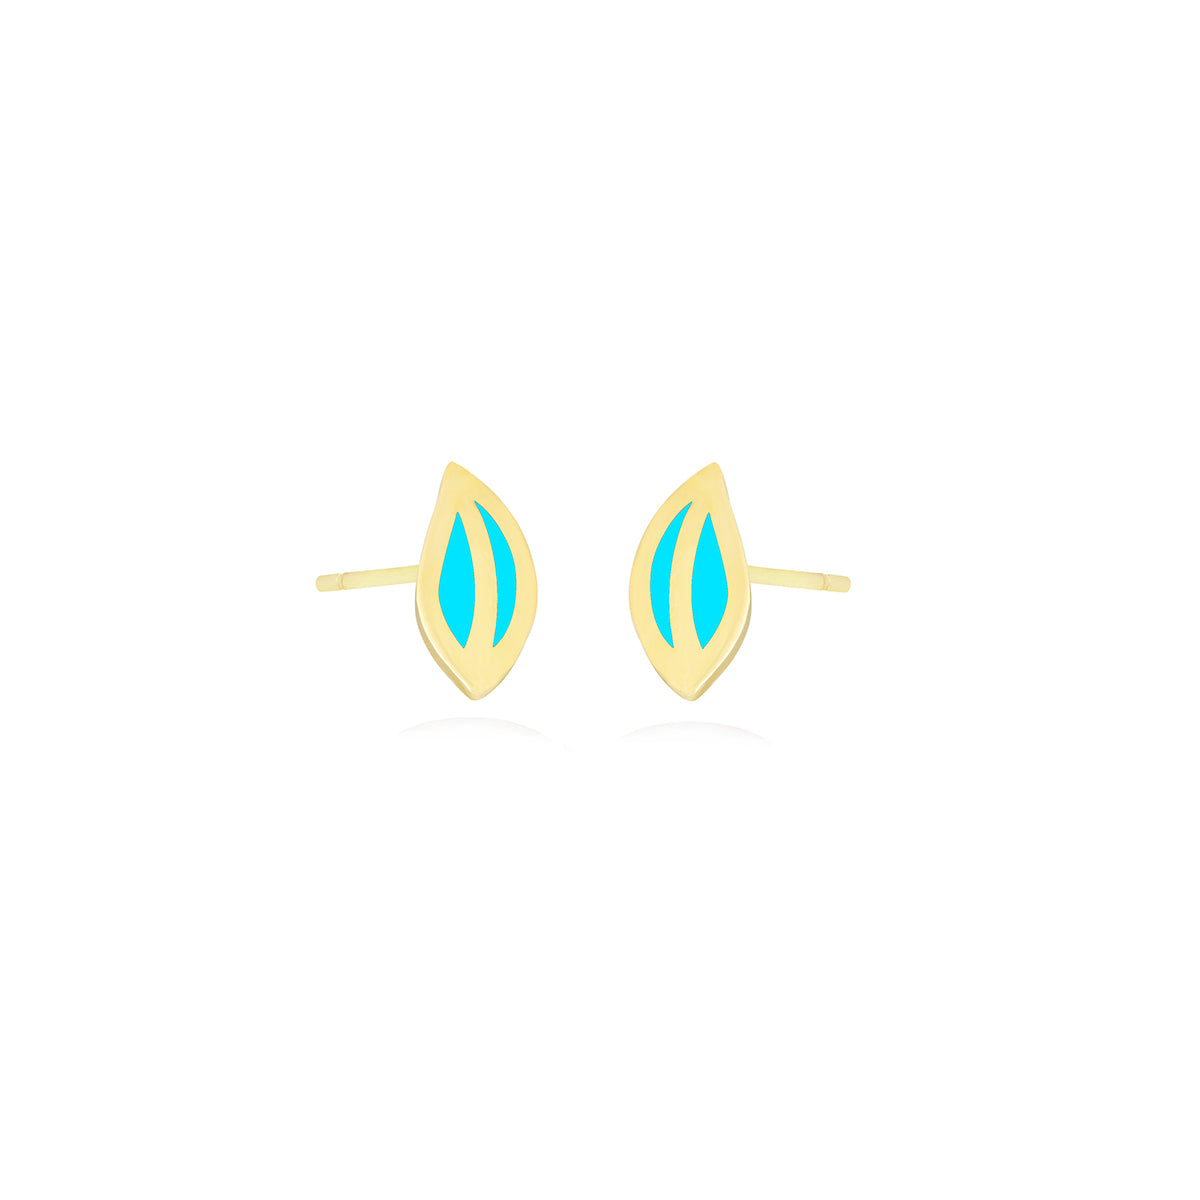 Leaf Stud Earrings in 18k Yellow Gold